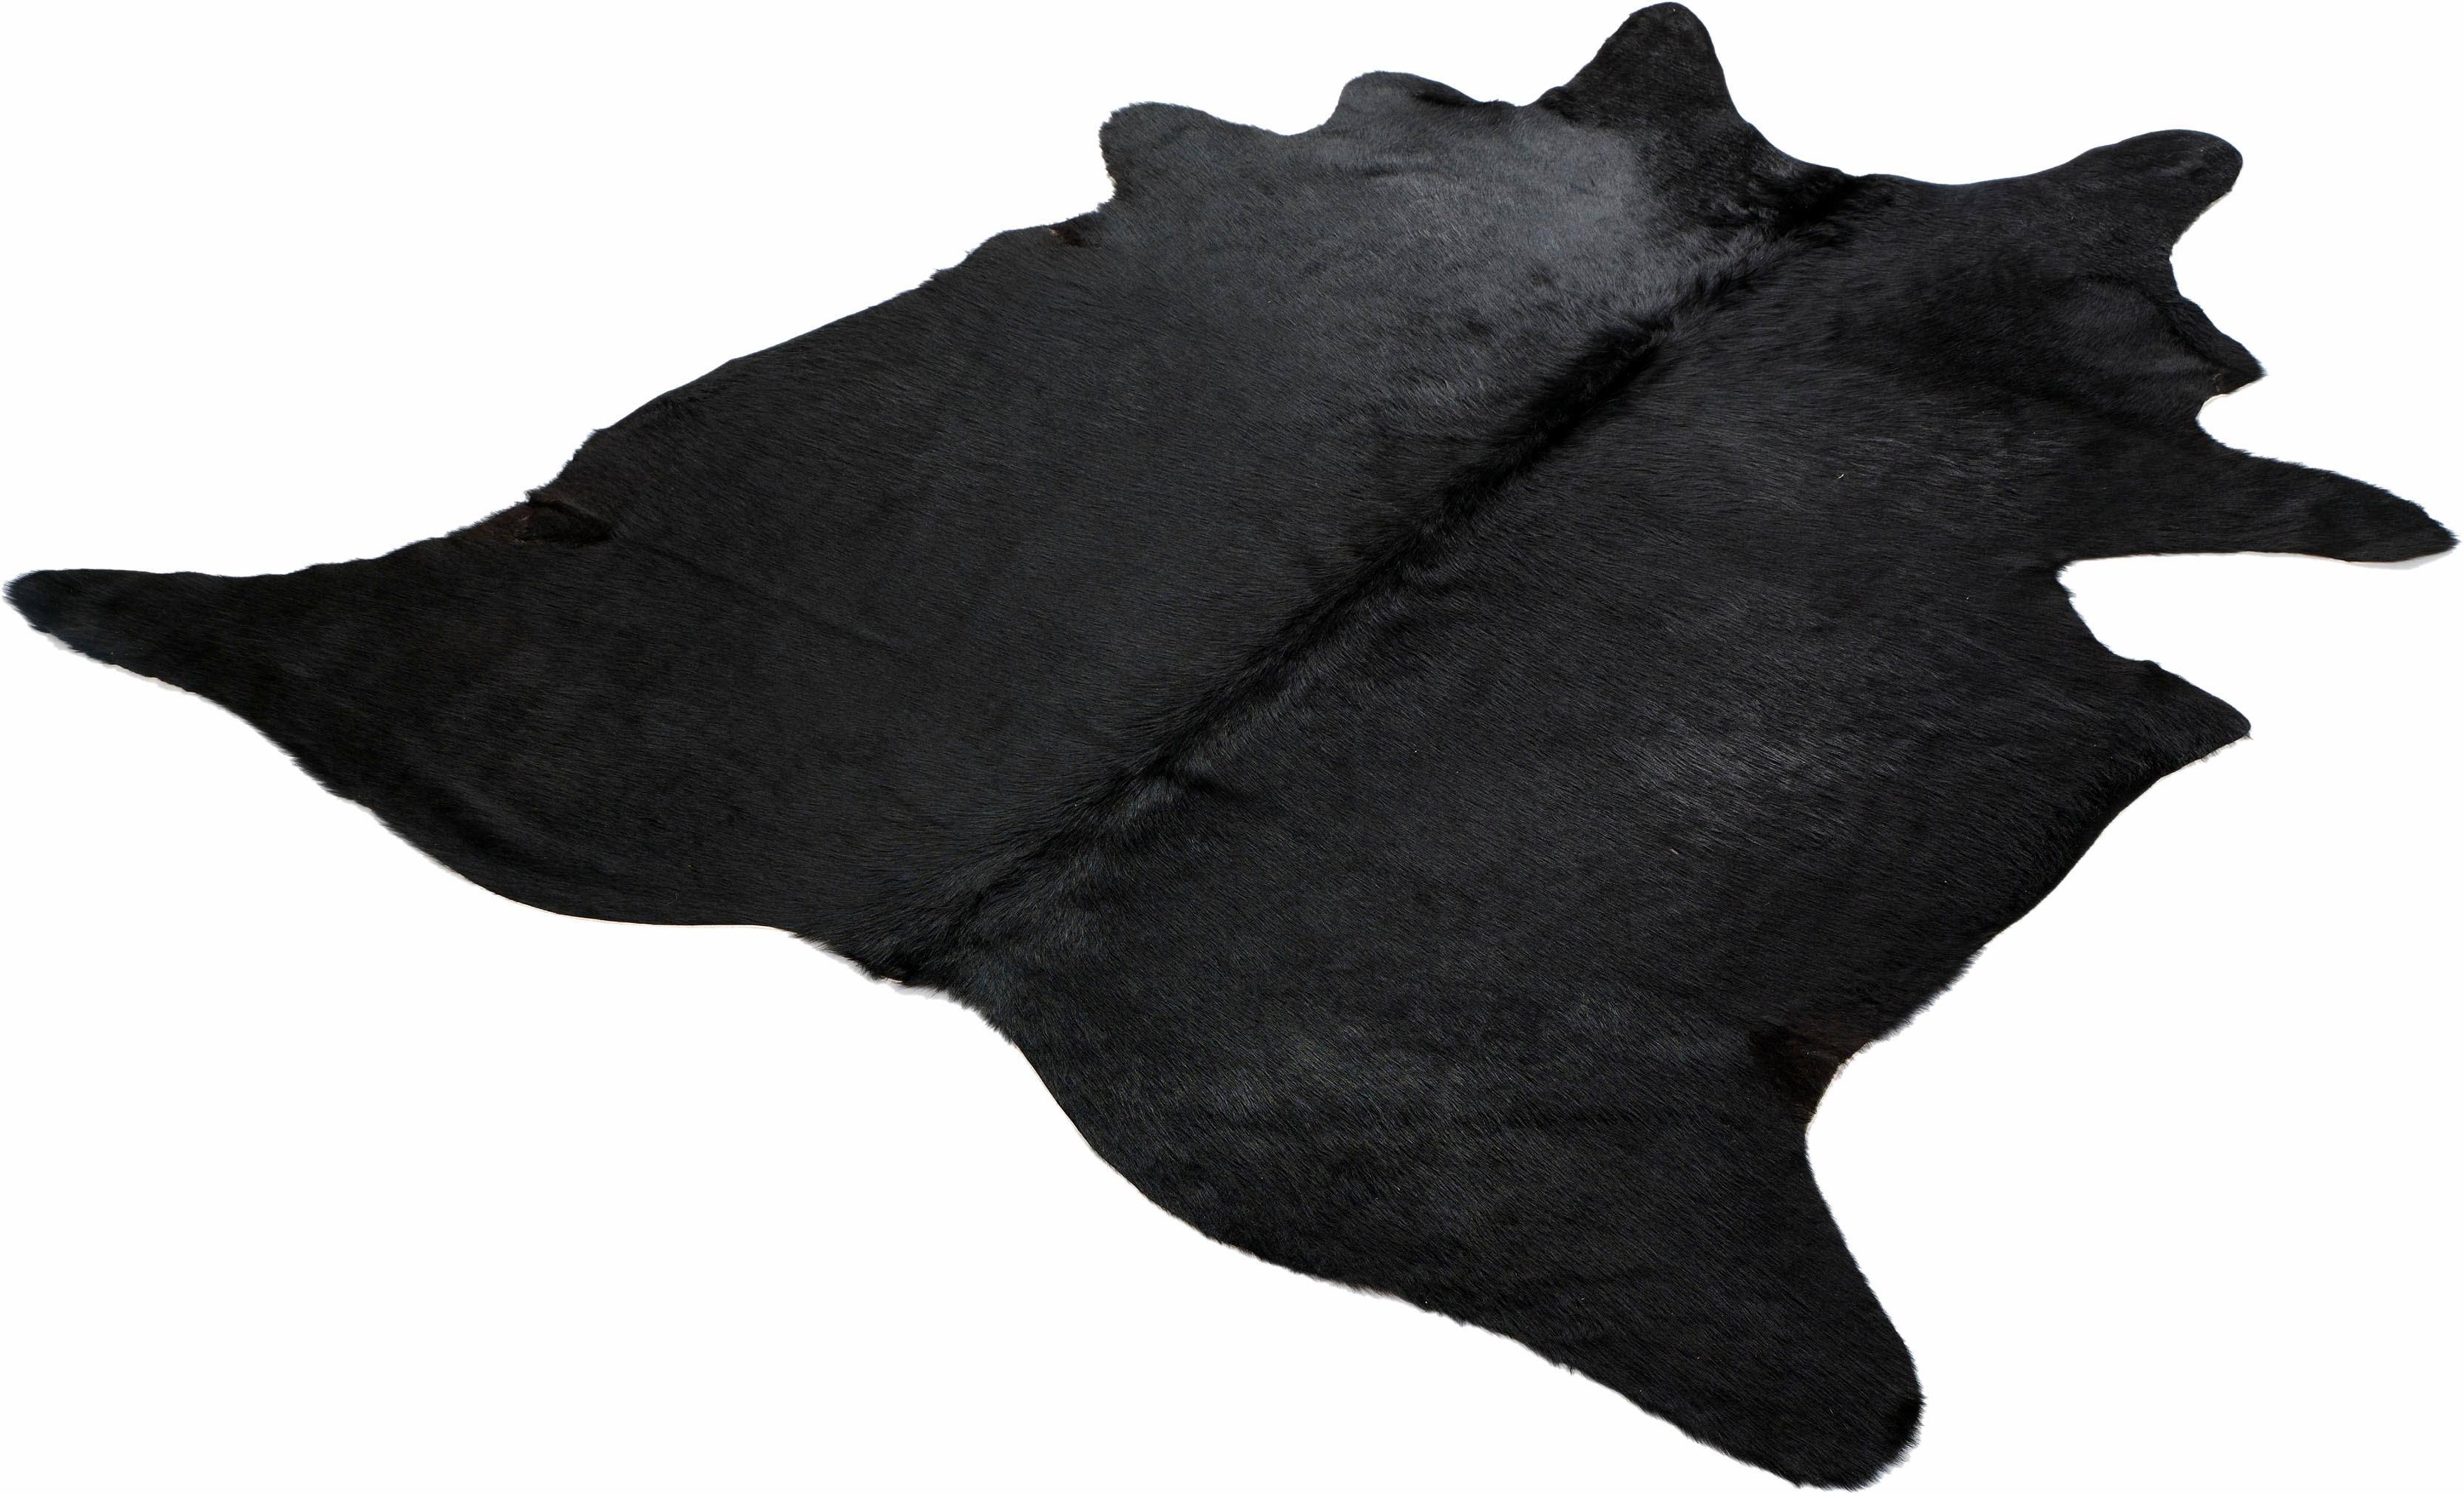 Böing Carpet Fellteppich Fell schwarz, fellförmig, 4 mm Höhe, echtes Rinderfell, Naturprodukt daher ist jedes Rinderfell ein Einzelstück, Wohnzimmer